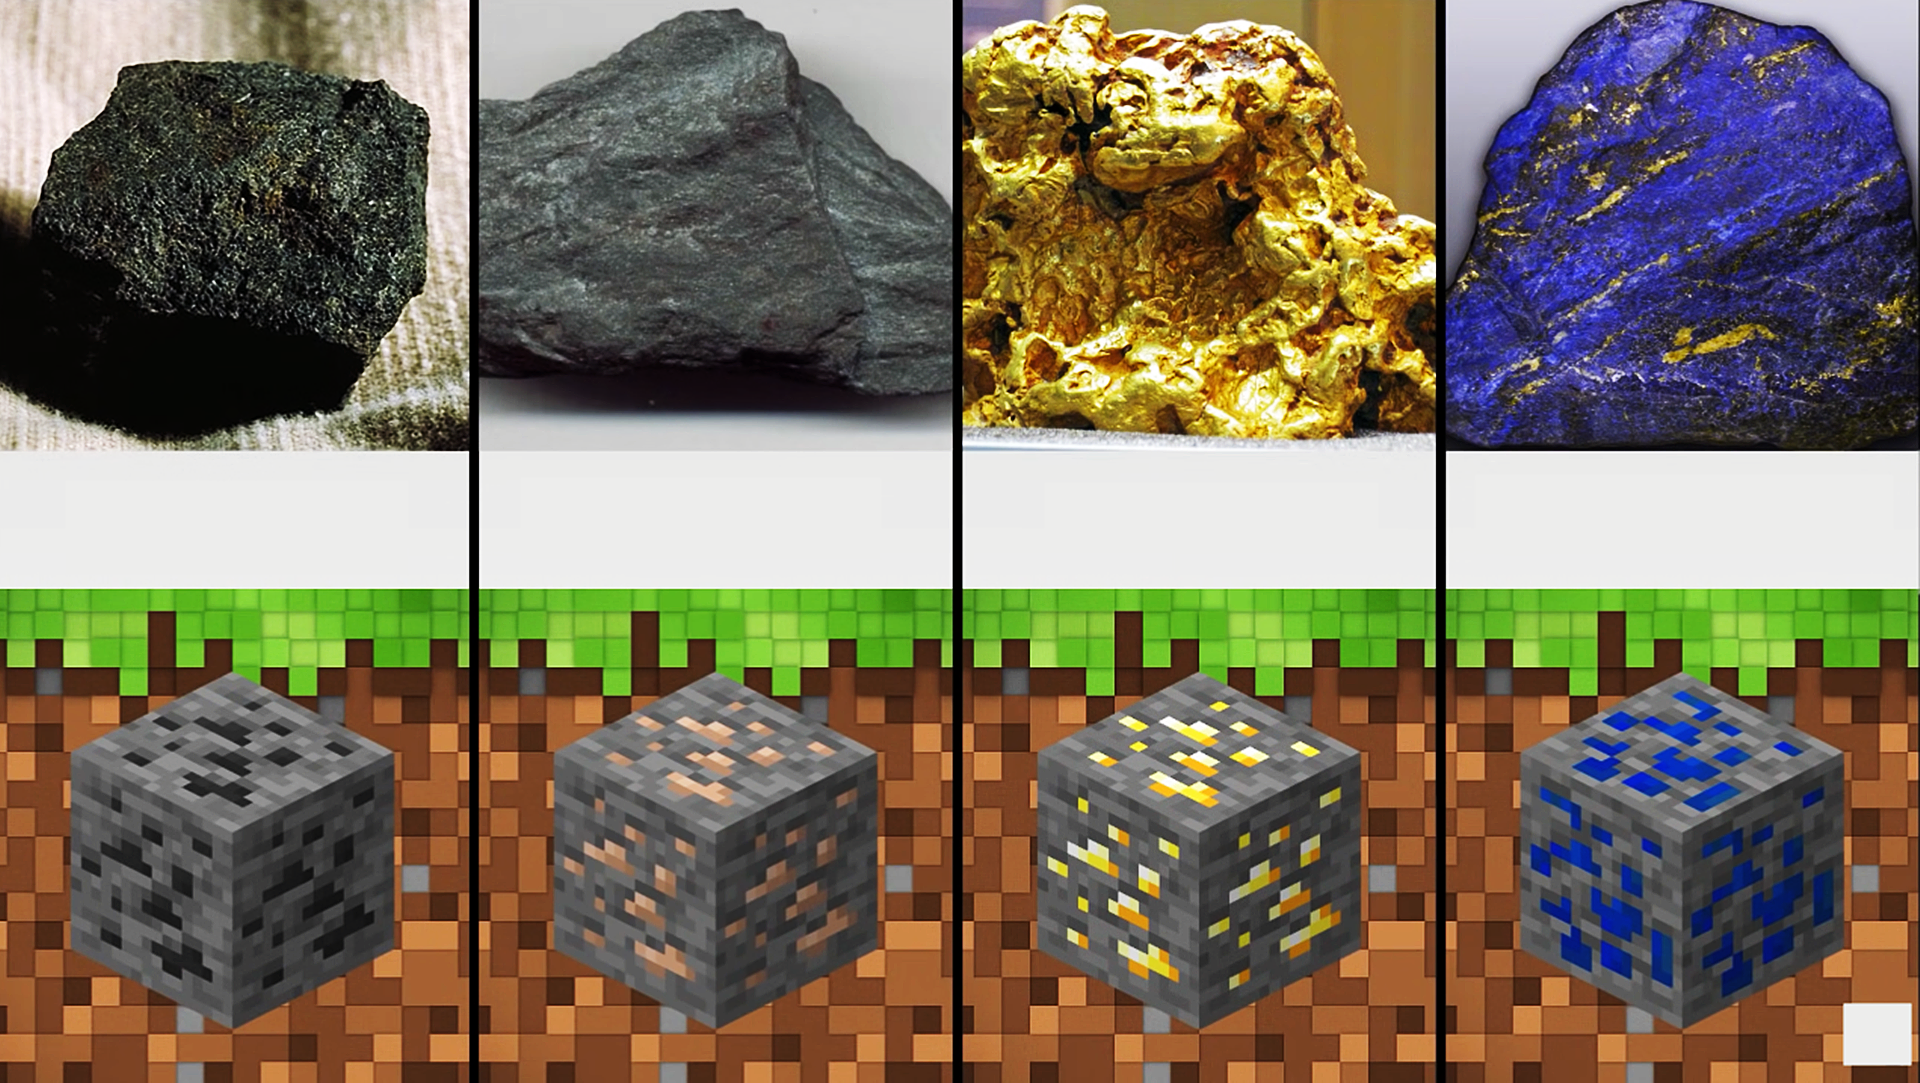 我的世界:24种矿物与矿石,真实的样子,绿宝石高度还原!